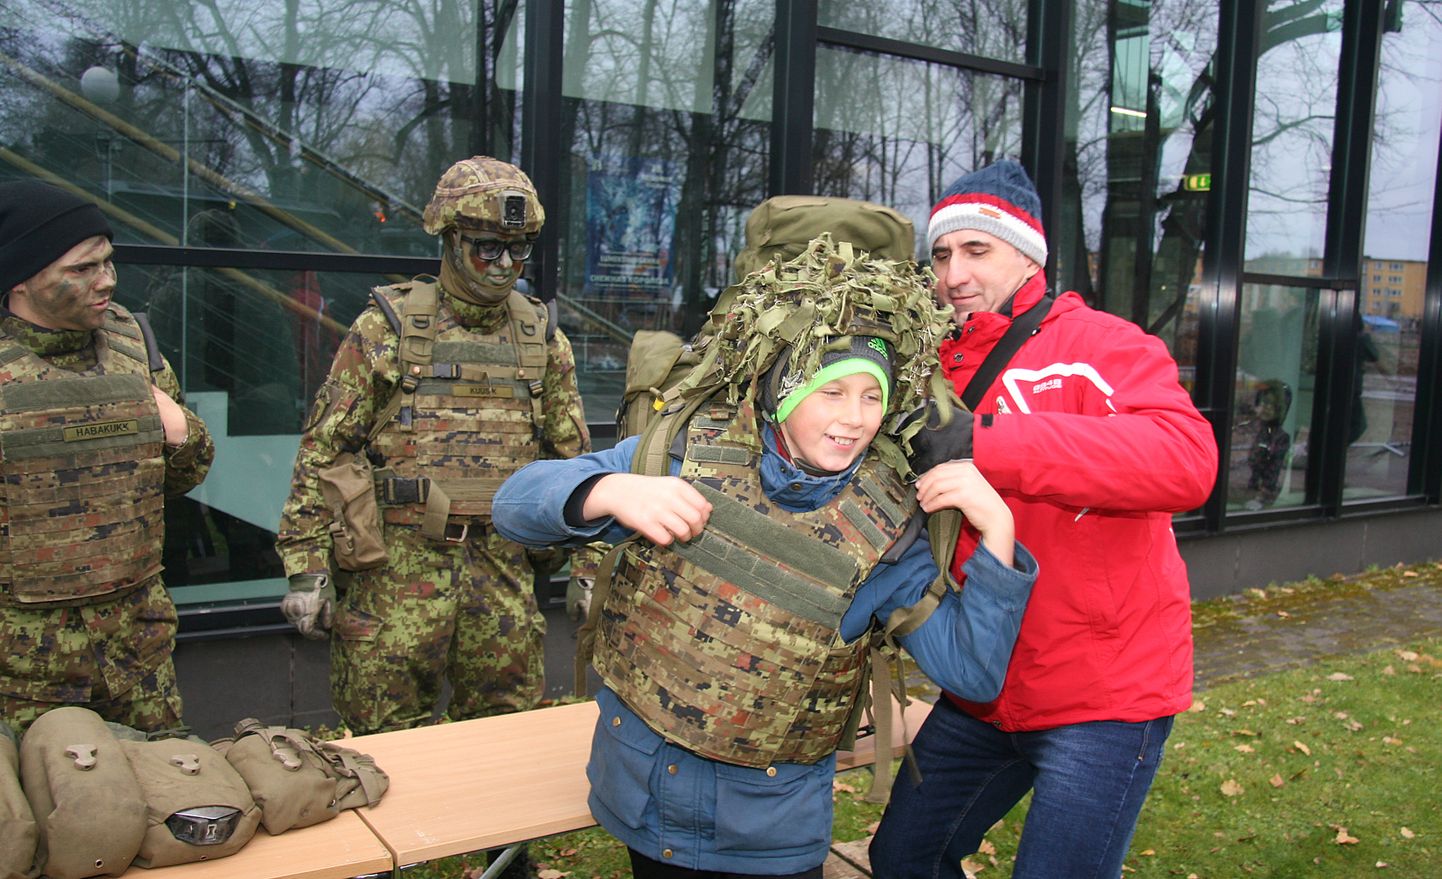 Nagi tavaks saanud, olid isadepäeval oma varustus ja tehnikat näitamas ka kaitseväelased. PEETER LILLEVÄLI